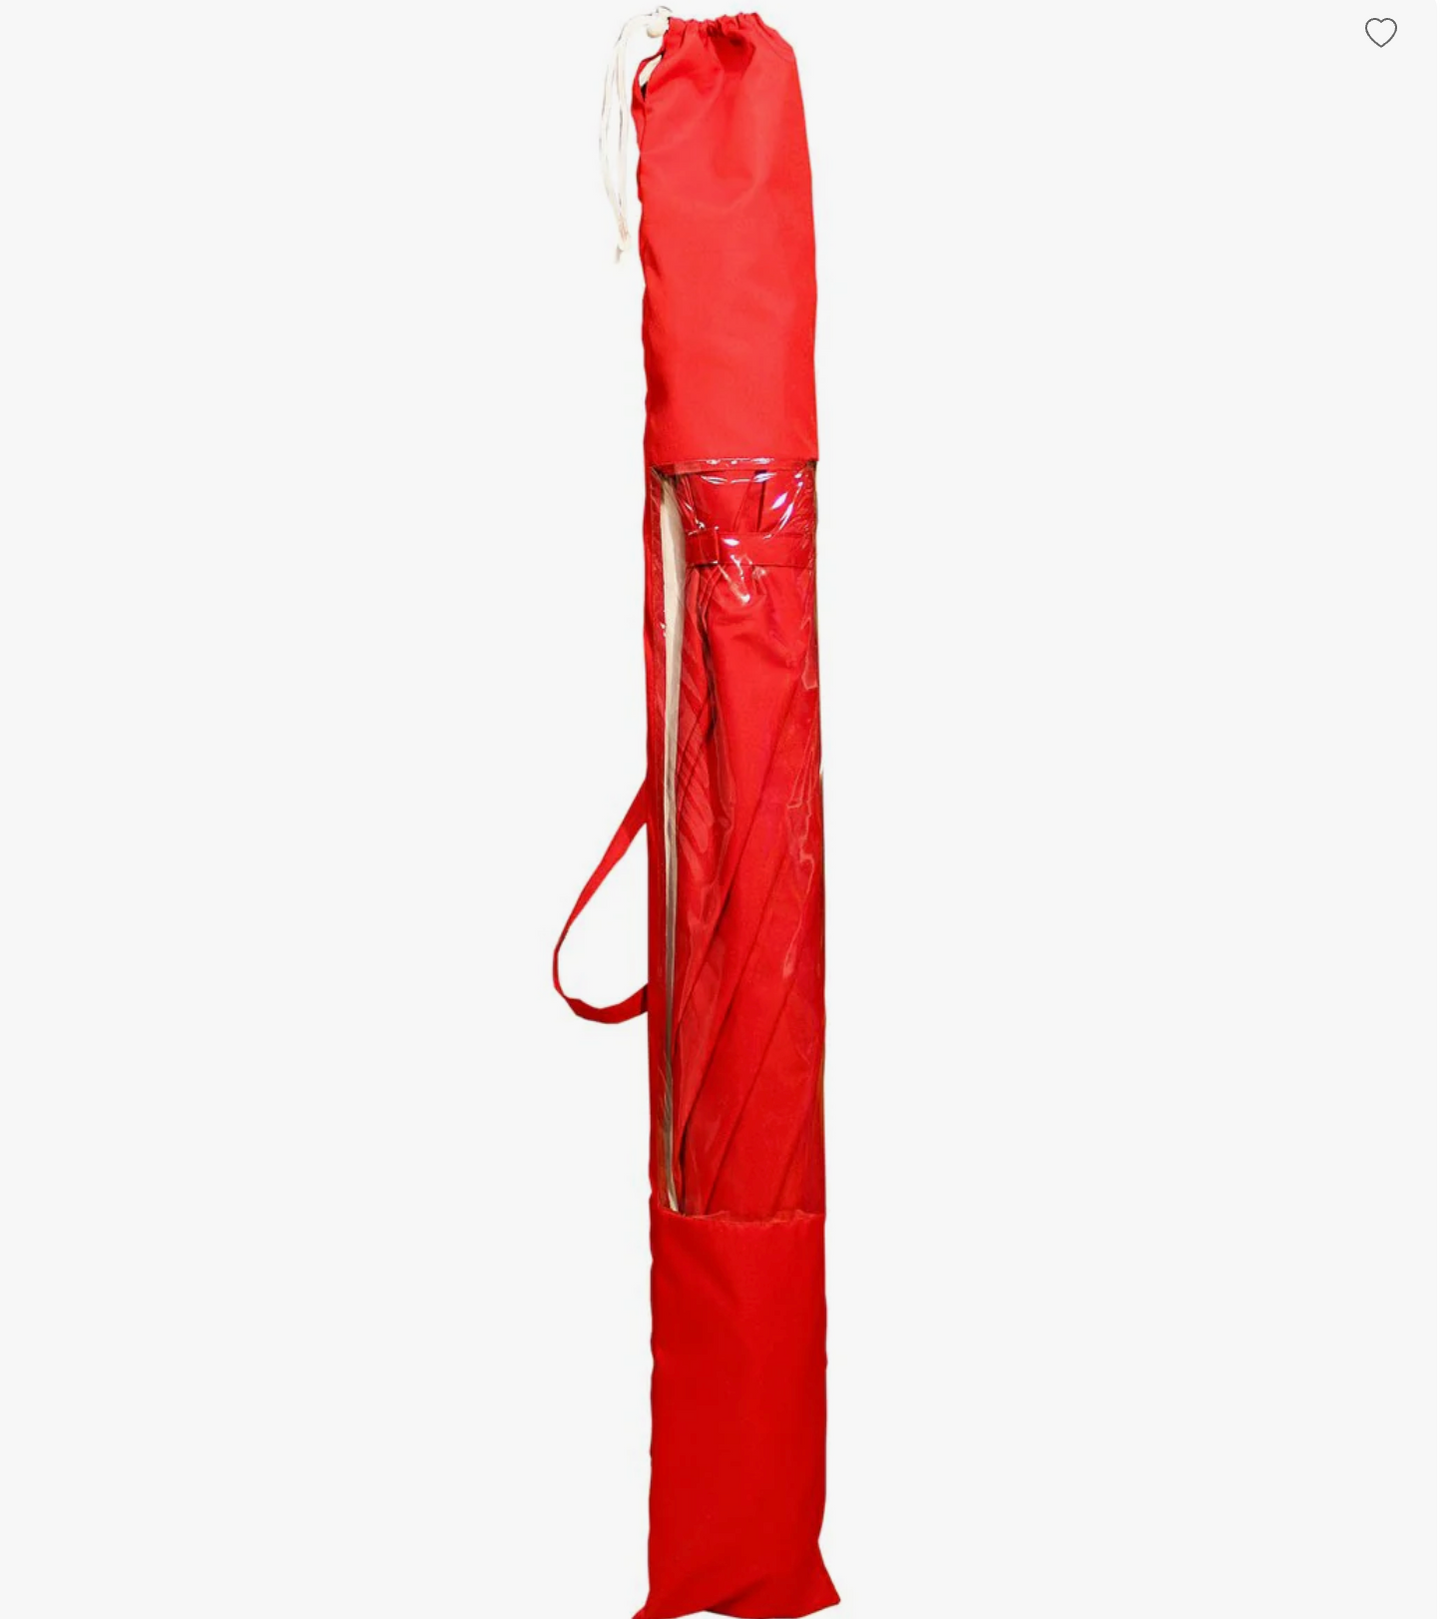 Beach Umbrella With Tilt (Red)